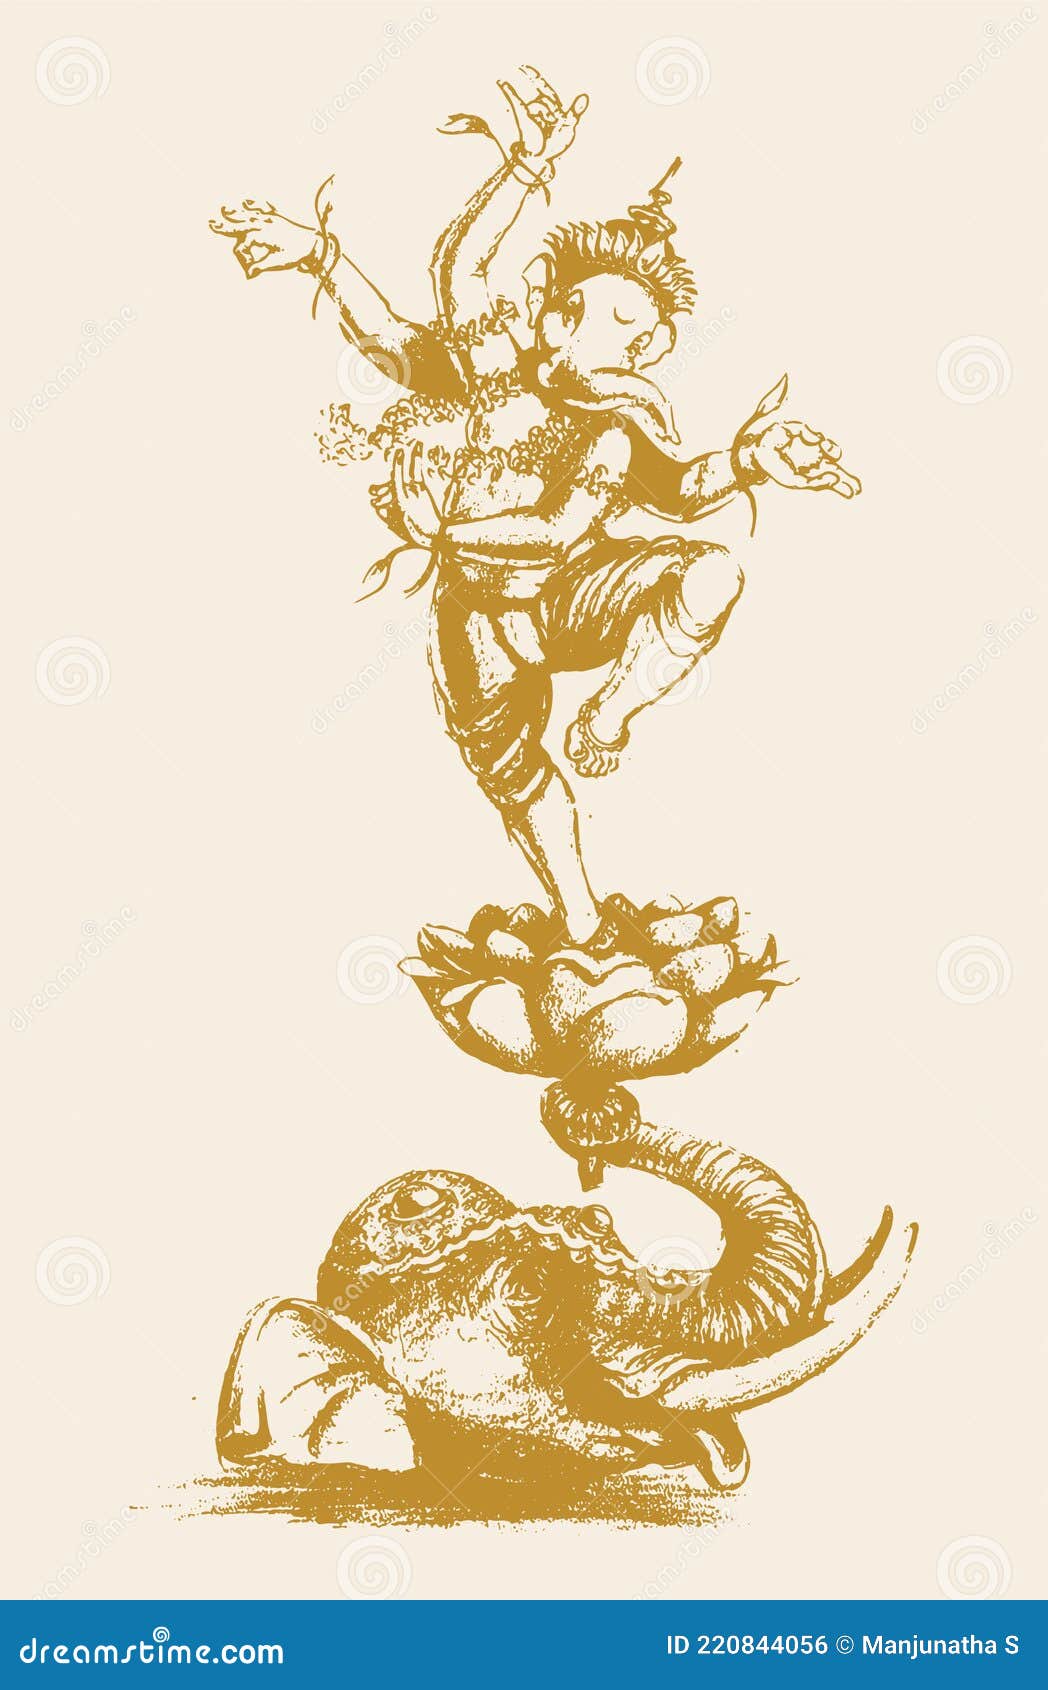 Lord Shiva And Ganesha Painting by Uma Maharana